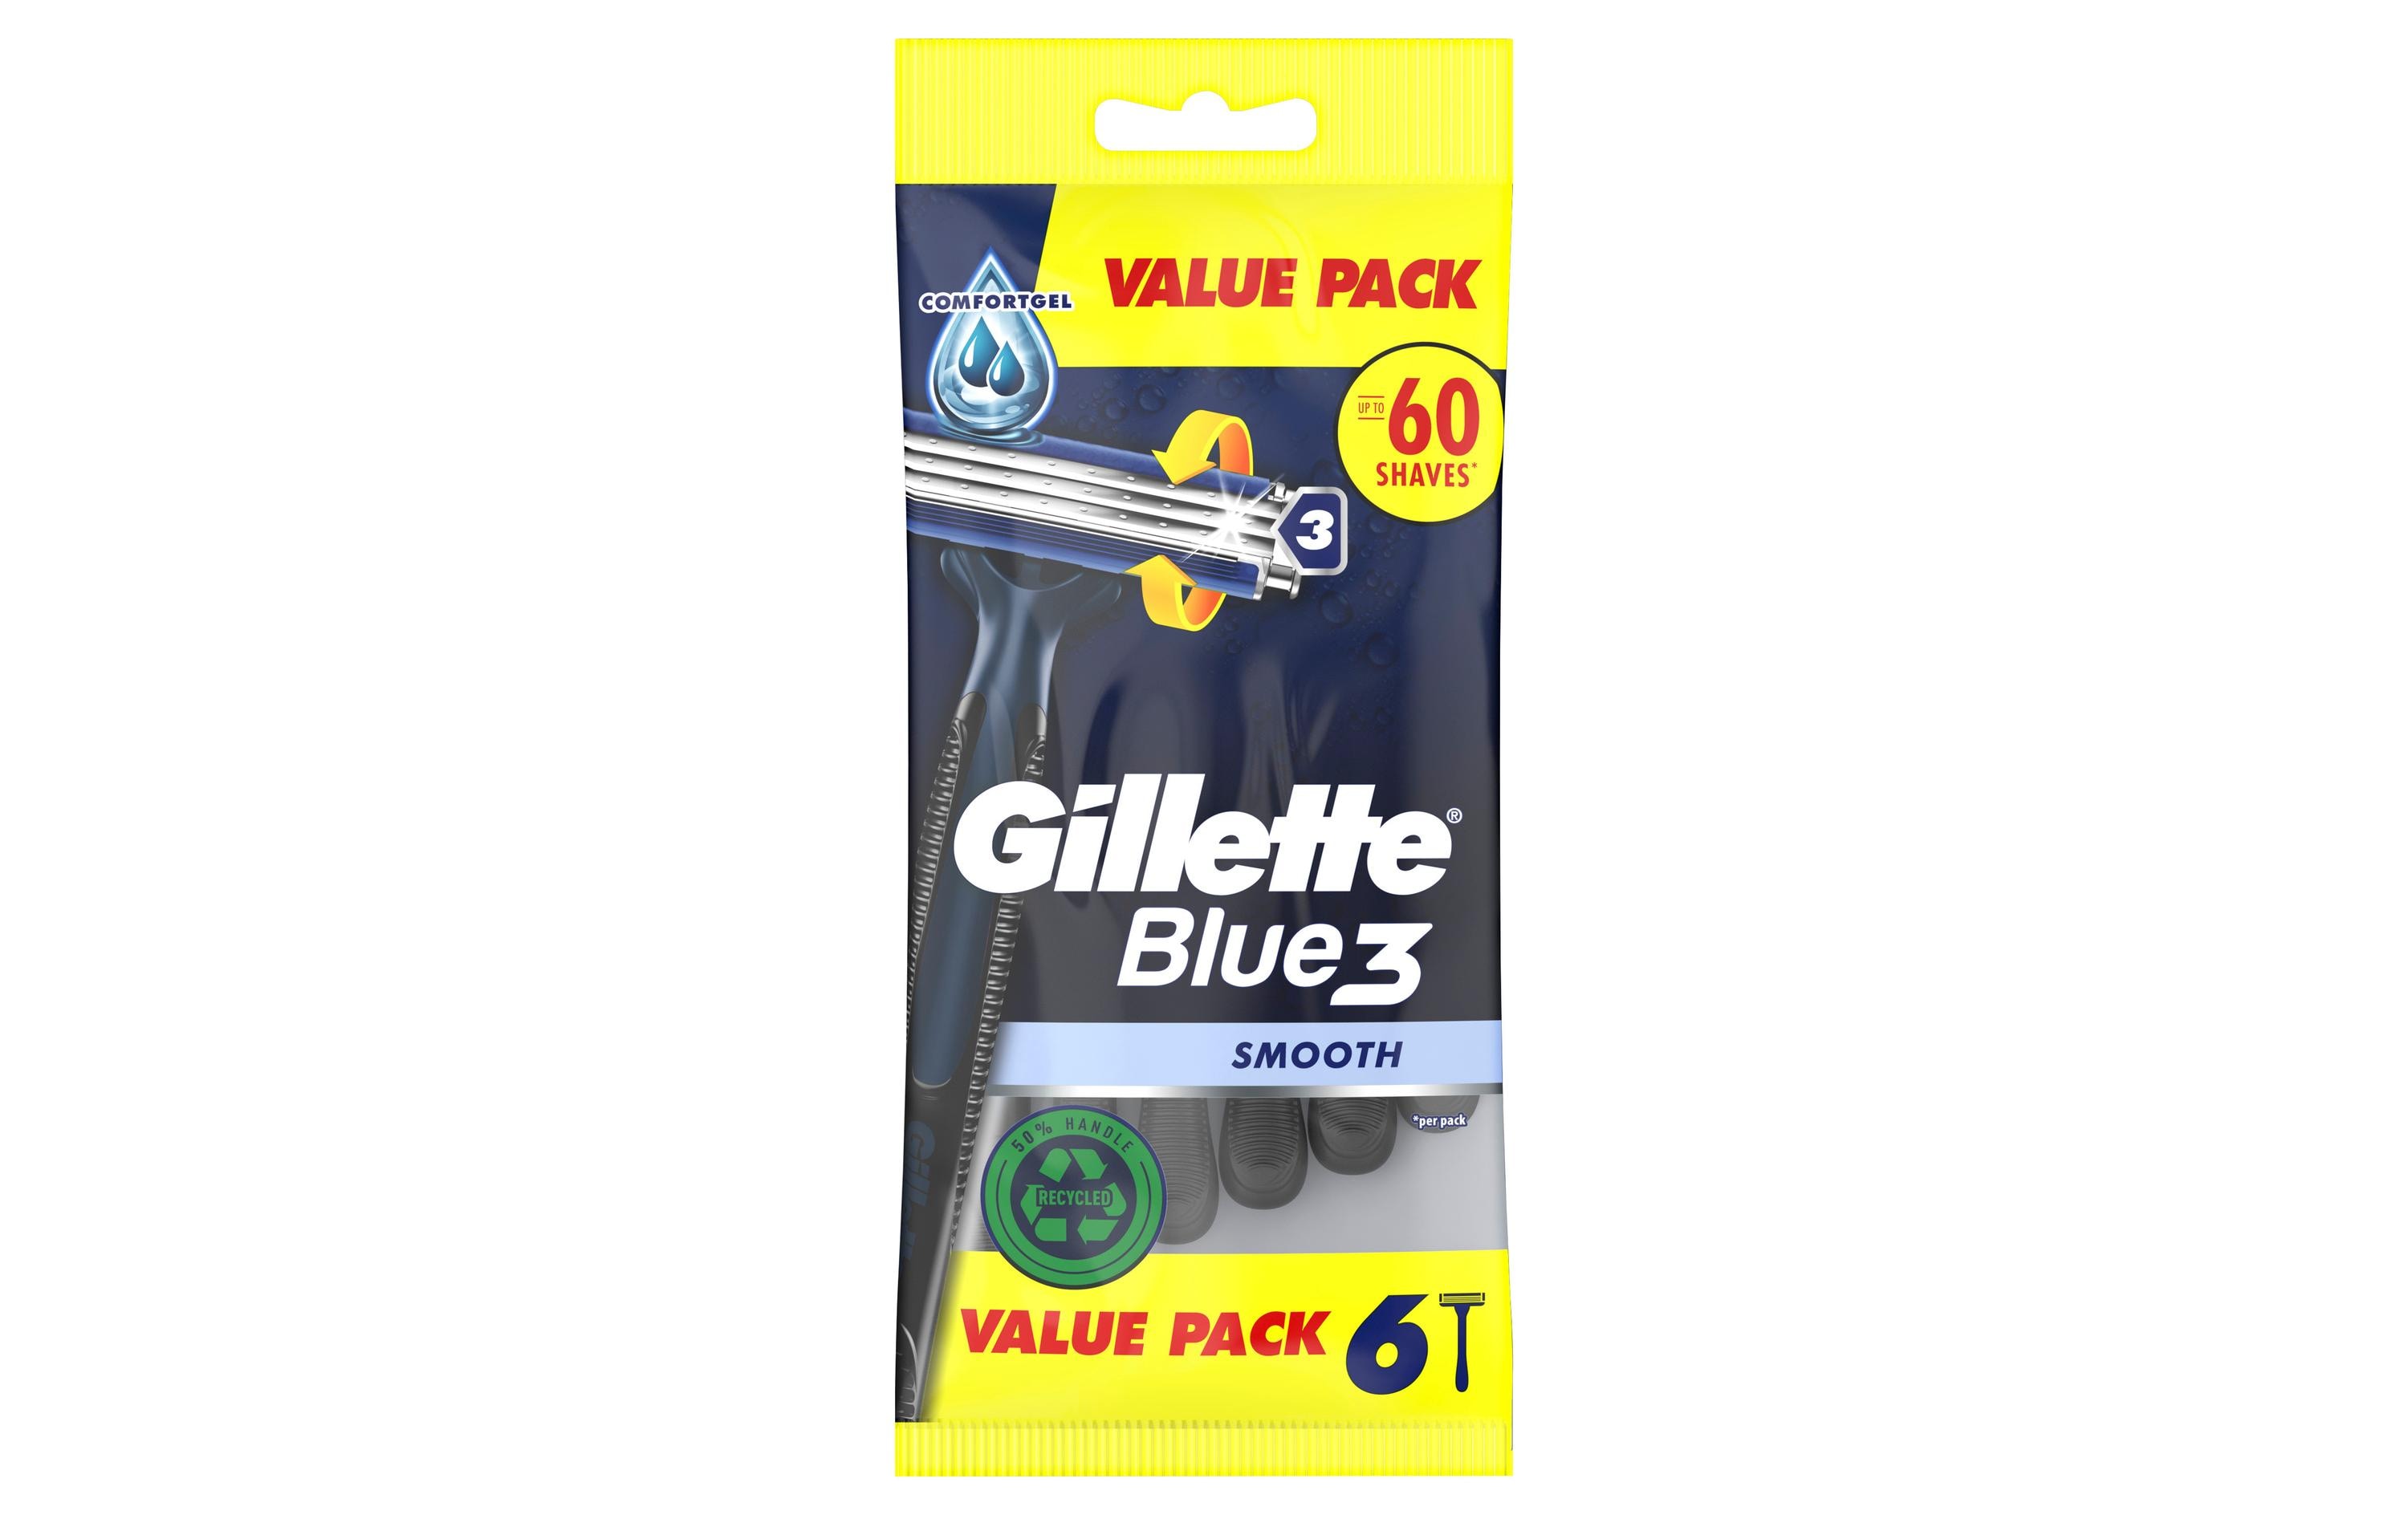 Gillette Einwegrasierer Blue 3 Smooth 6 Stück